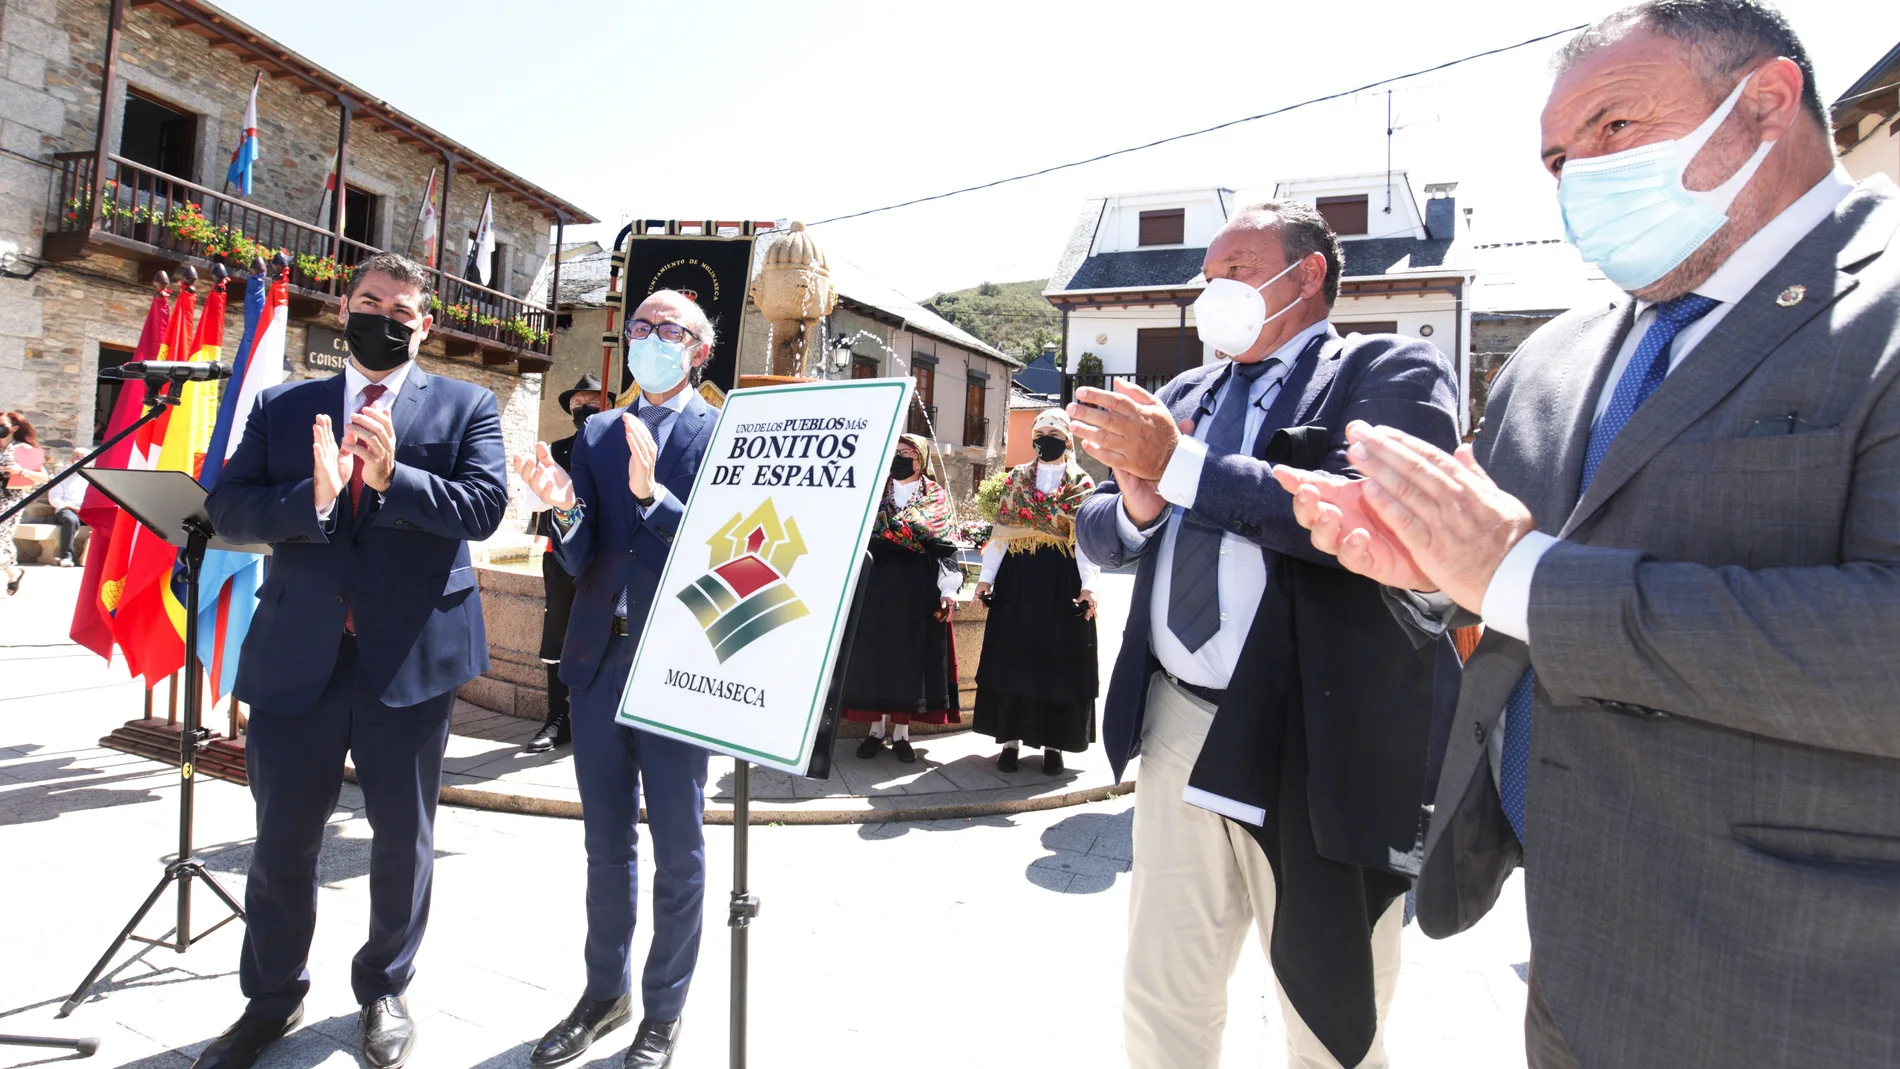 El consejero de Cultura y Turismo, Javier Ortega, preside los actos de celebración en Molinaseca, en León, al ser distinguido como uno de los pueblos más bonitos de España